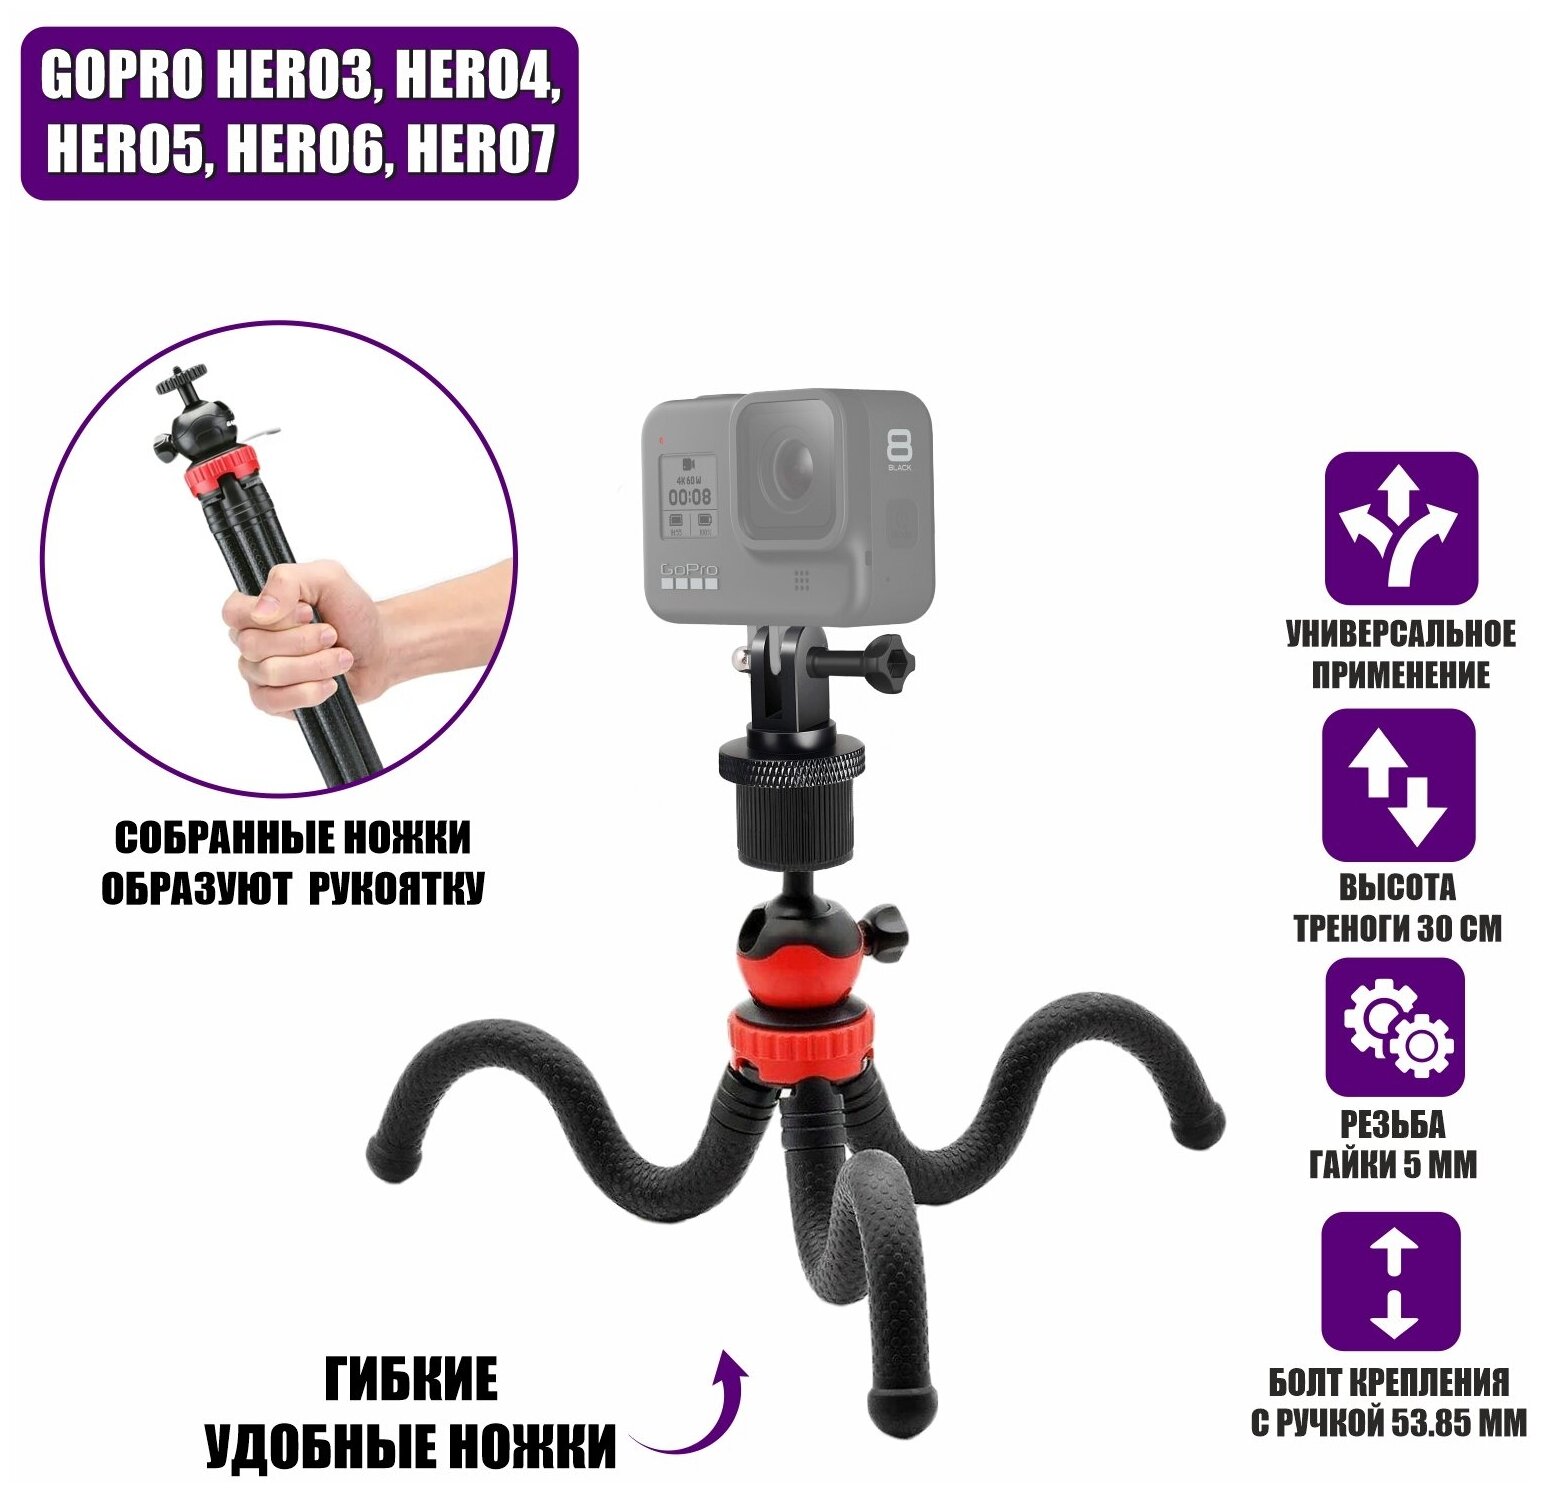 Пластиковый переходник Flex-0330G для GoPro на штативе-триподе с гибкими прорезиненными ножками